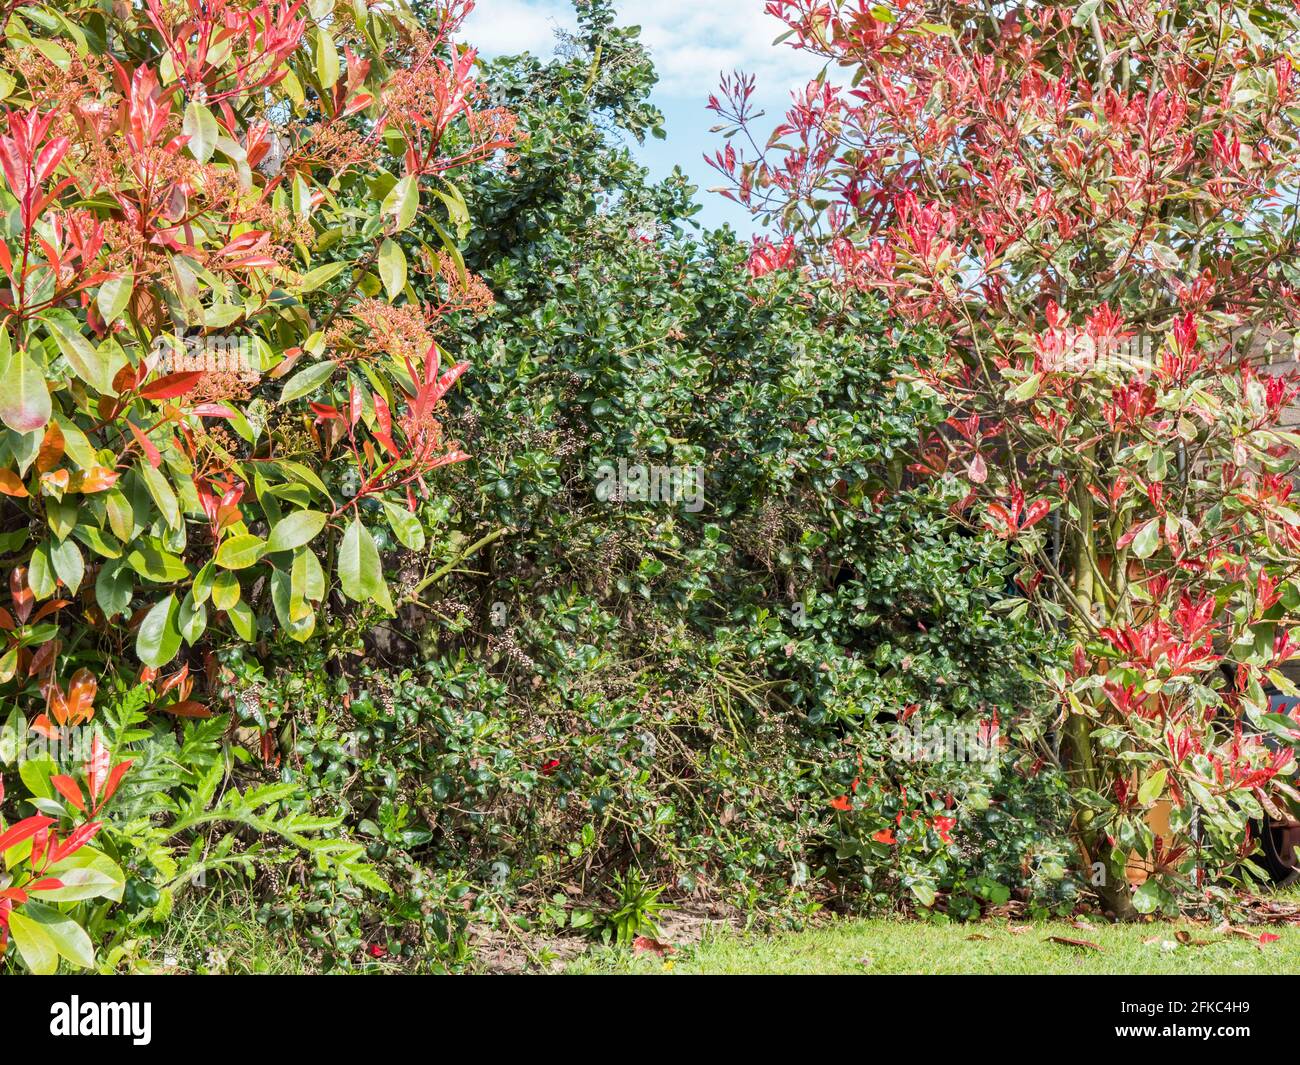 Rosa und grüne Blattsträucher. ‘Roter Robin’ auf der linken Seite (Photinia fraseri), ‘Rosafarbenes Marmor’ (Photinia cassini) auf der rechten Seite. Das Zentrum ist nicht blühend, kalifornischer Flieder. Stockfoto